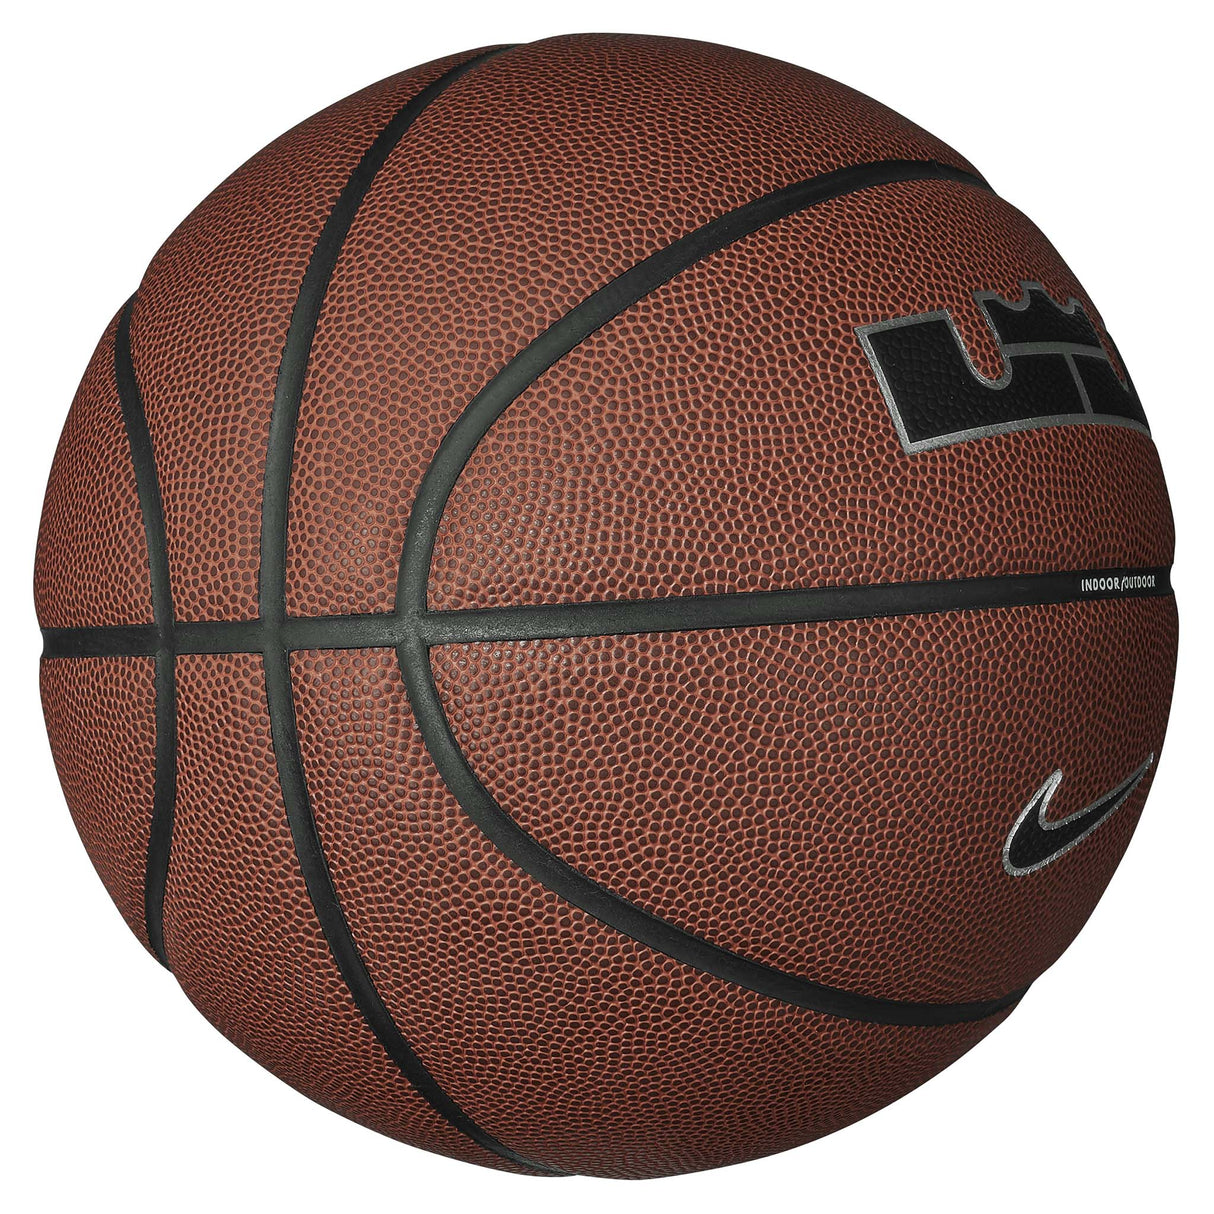 Ballon de basketball Nike All Court 8P 2.0 LeBron James lateral